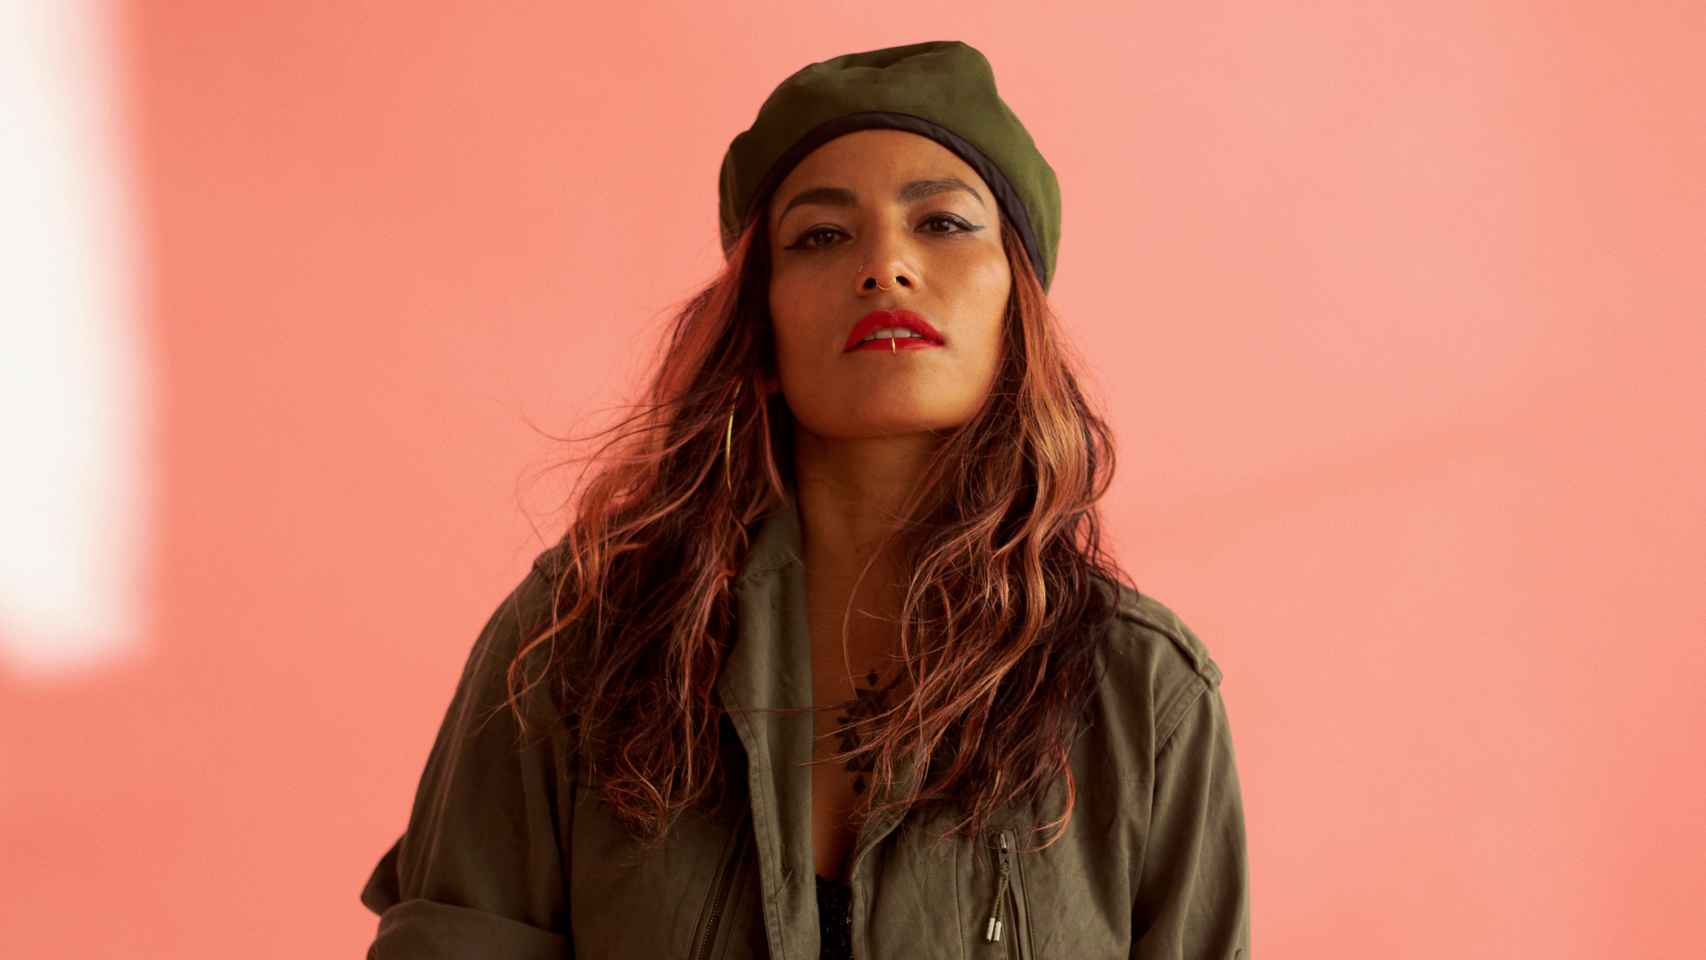 La chilena Ana Tijoux encarna un hip hop feminista y combativo